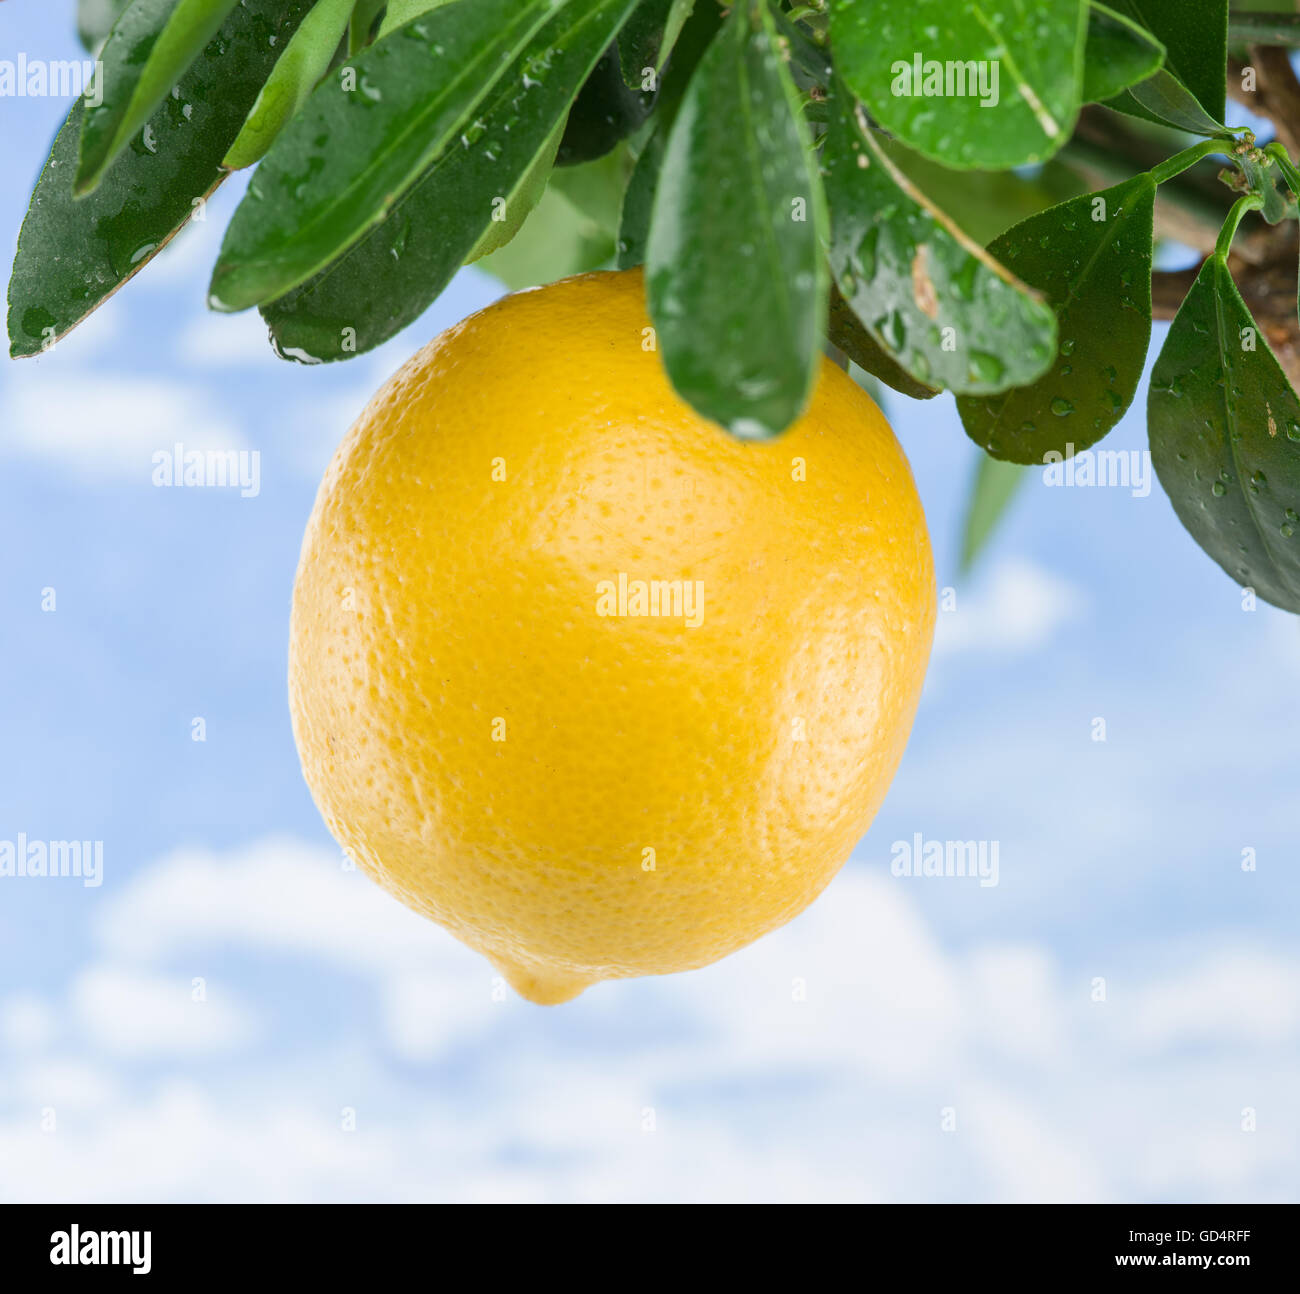 Reife Zitrone Frucht am Baum. Blauer Himmelshintergrund. Stockfoto